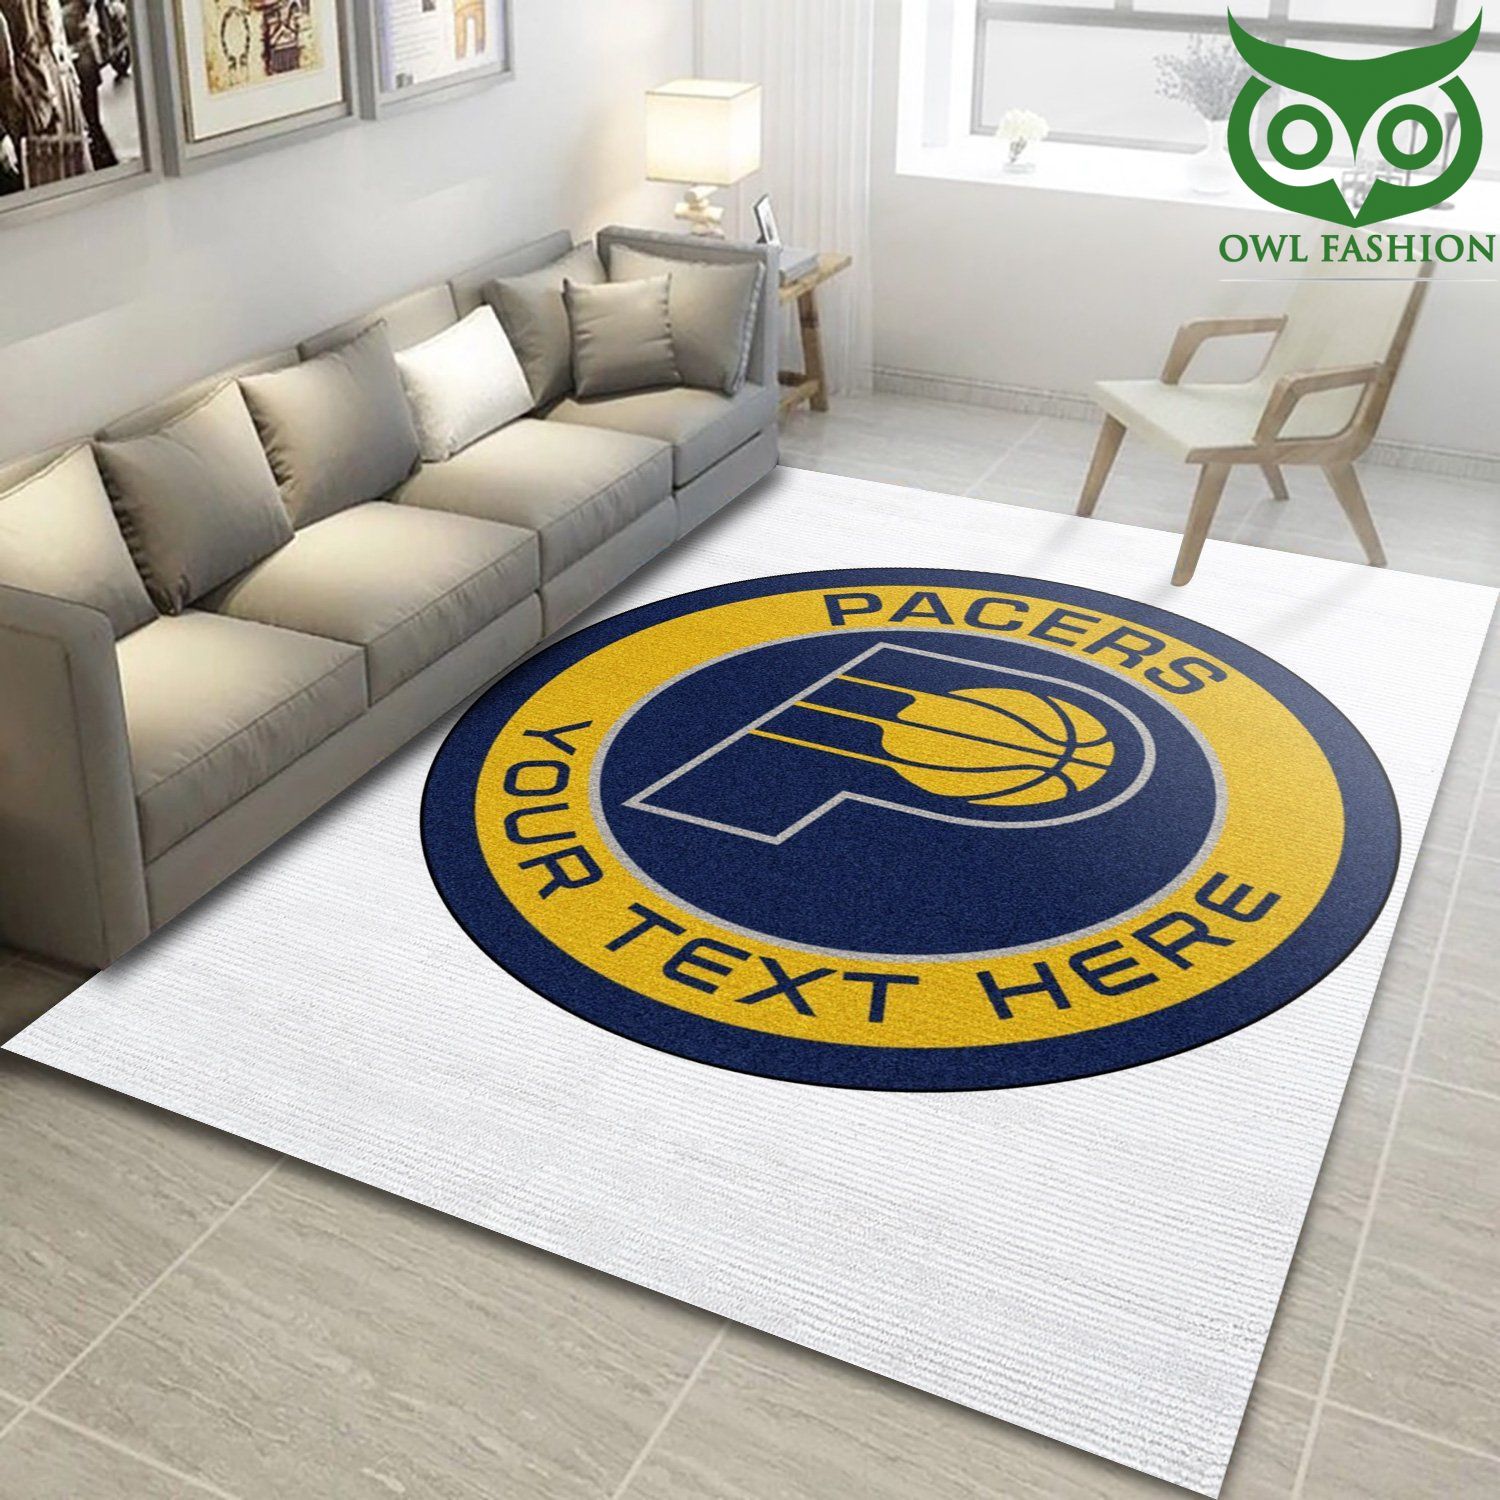 Customizable Indiana Pacers NBA carpet rug